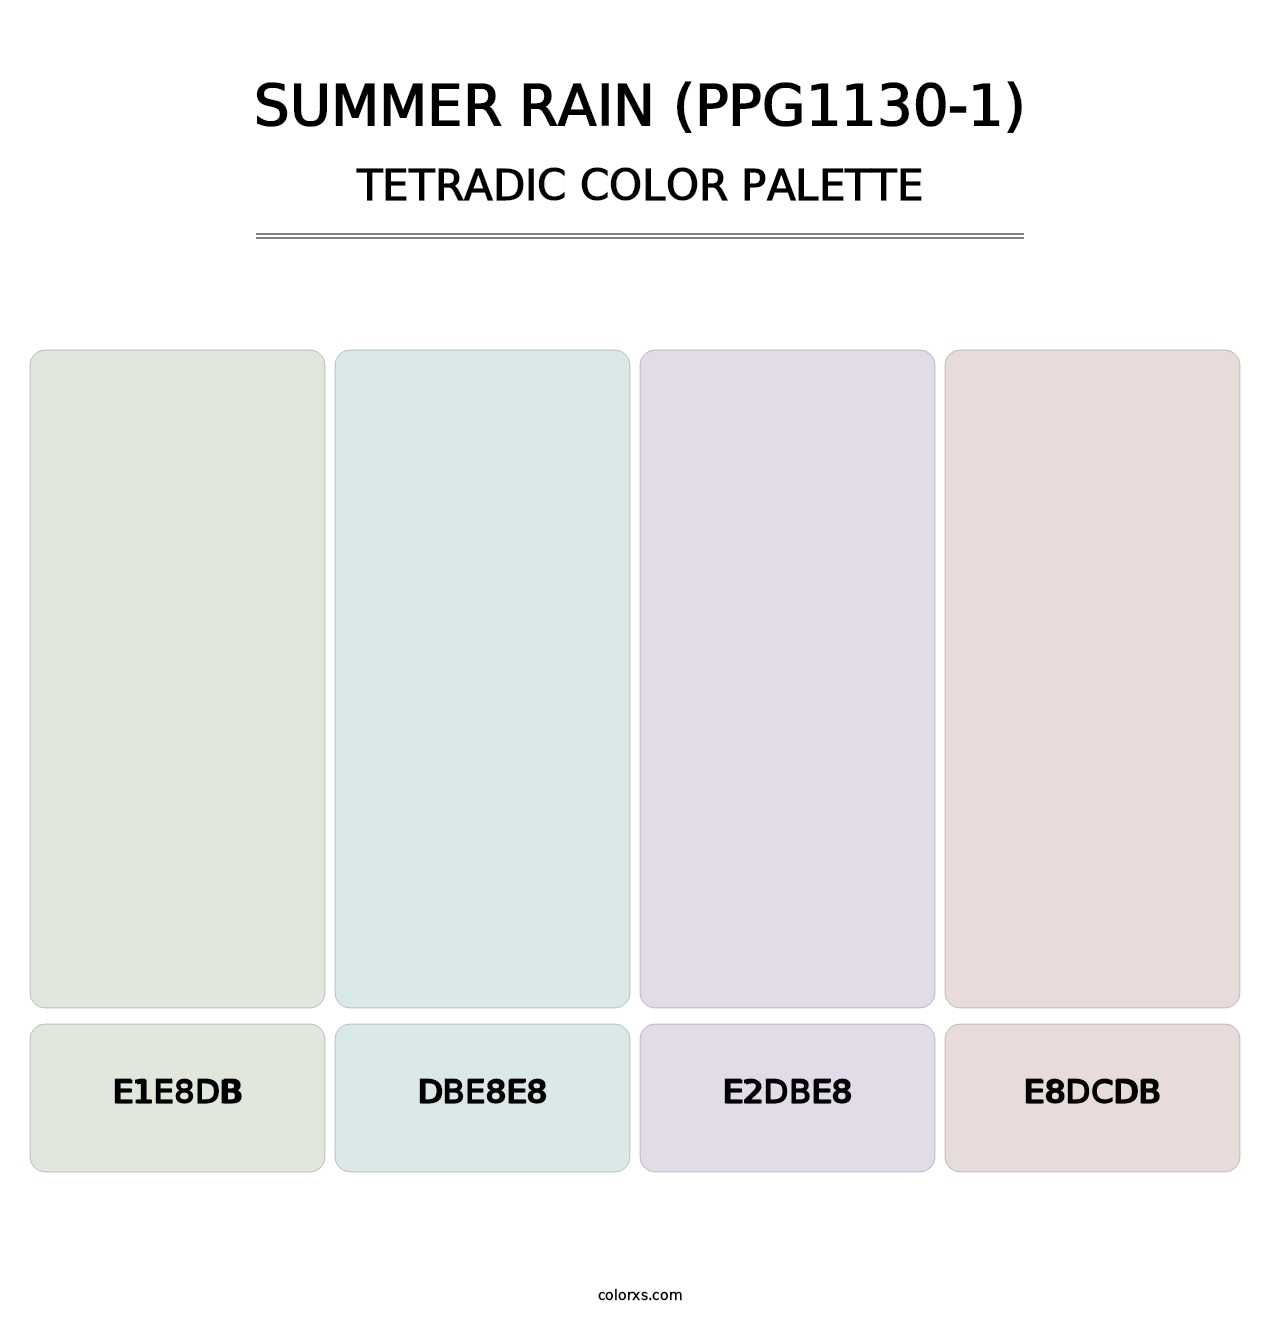 Summer Rain (PPG1130-1) - Tetradic Color Palette